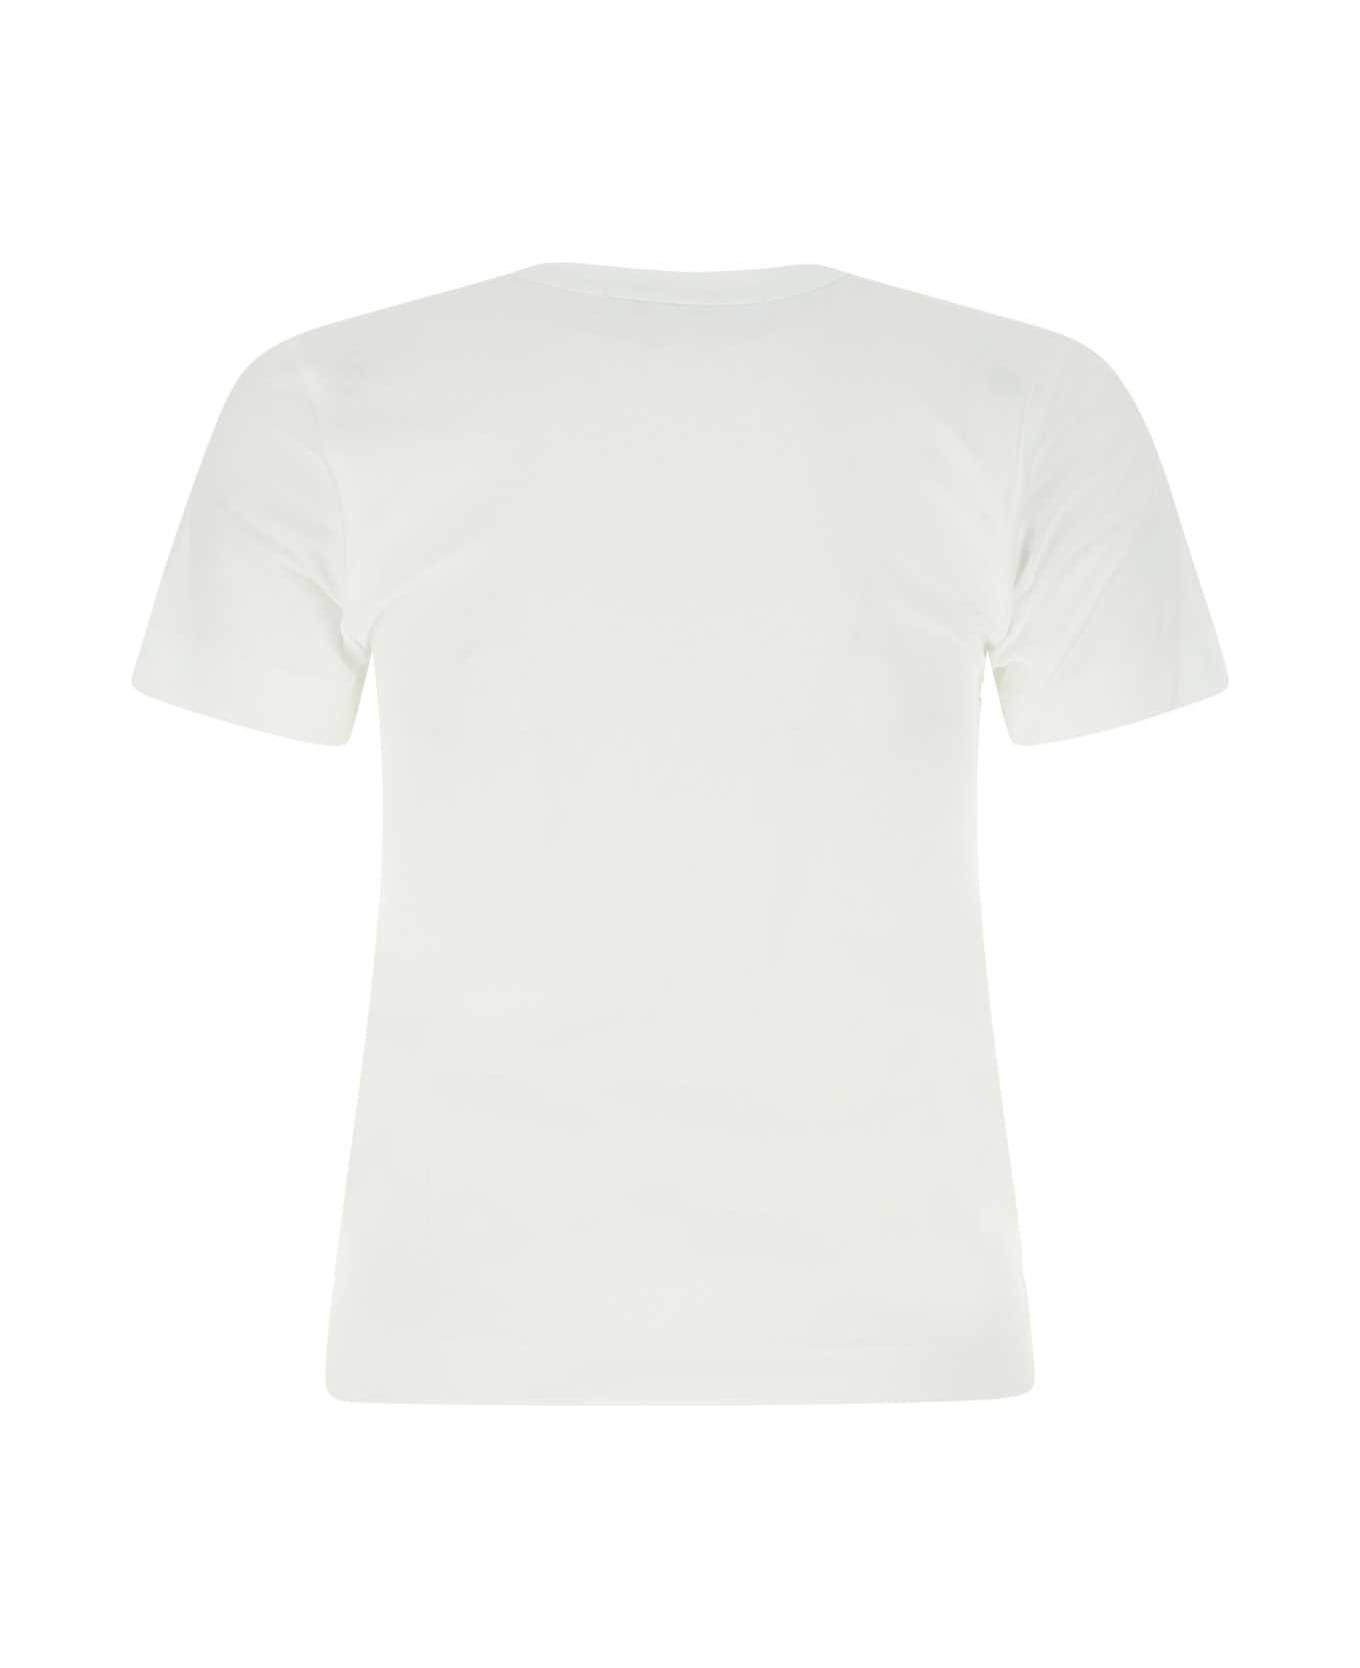 Comme des Garçons Play White Cotton T-shirt - PURPLE